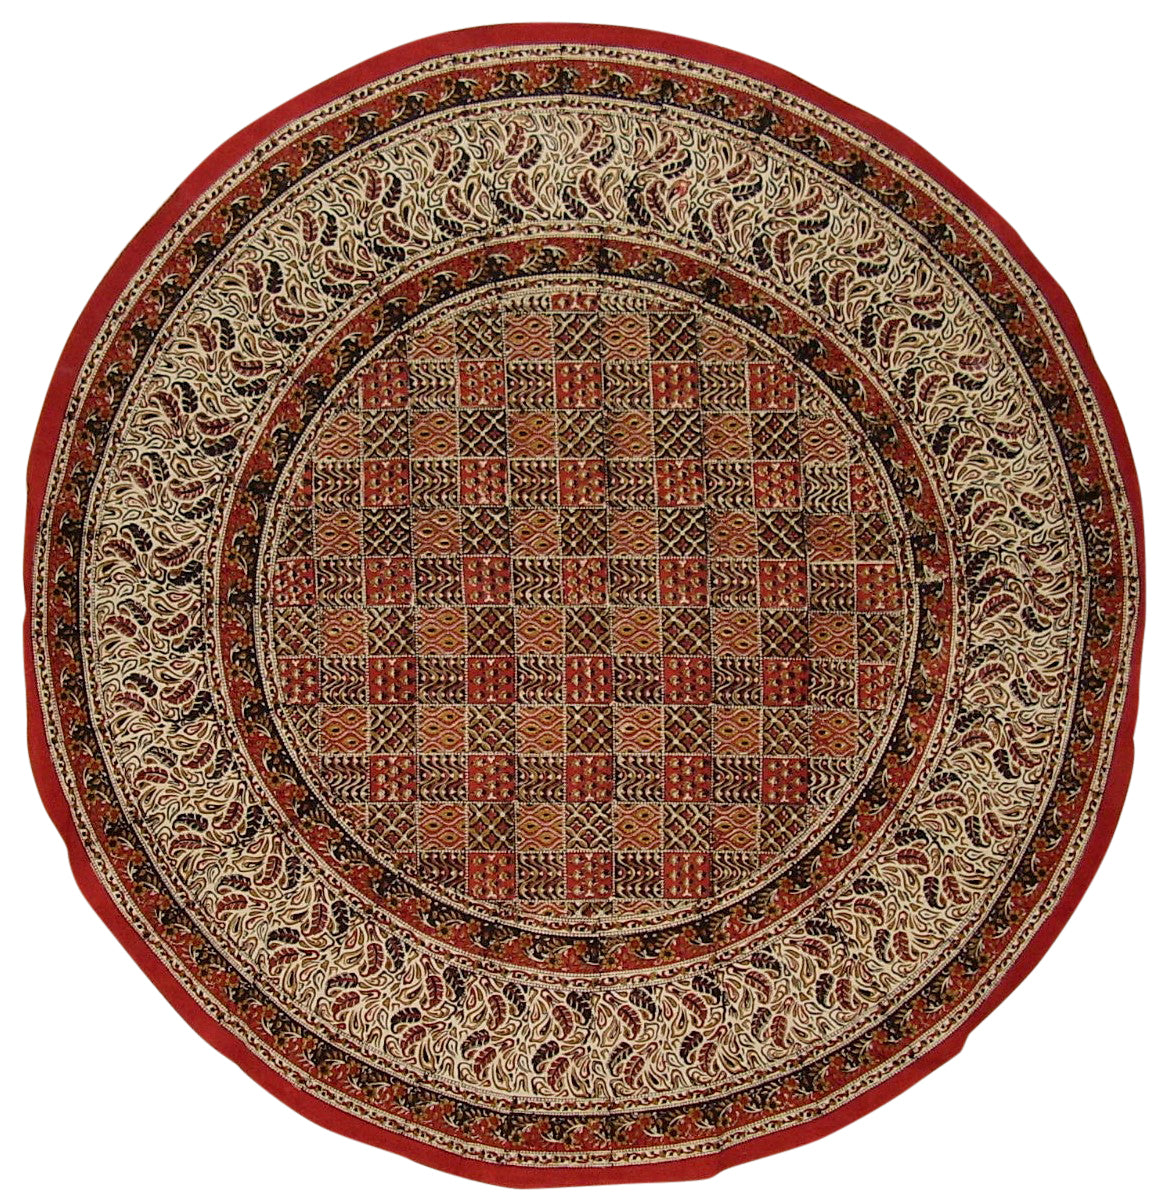 Kalamkari 塊印花圓形棉質桌布 72 吋多色 